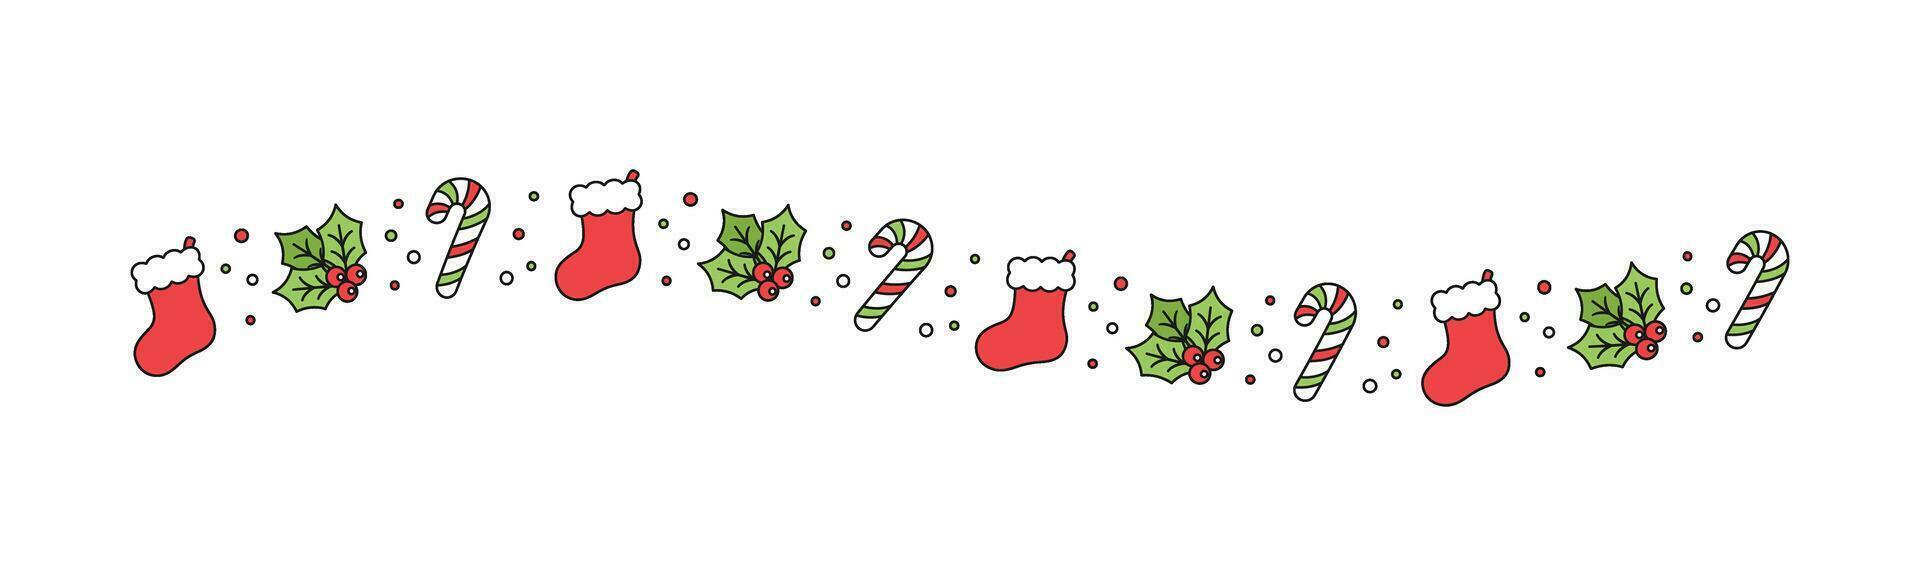 Natale a tema decorativo ondulato linea confine e testo divisore, Natale calza, caramella canna e vischio modello. vettore illustrazione.